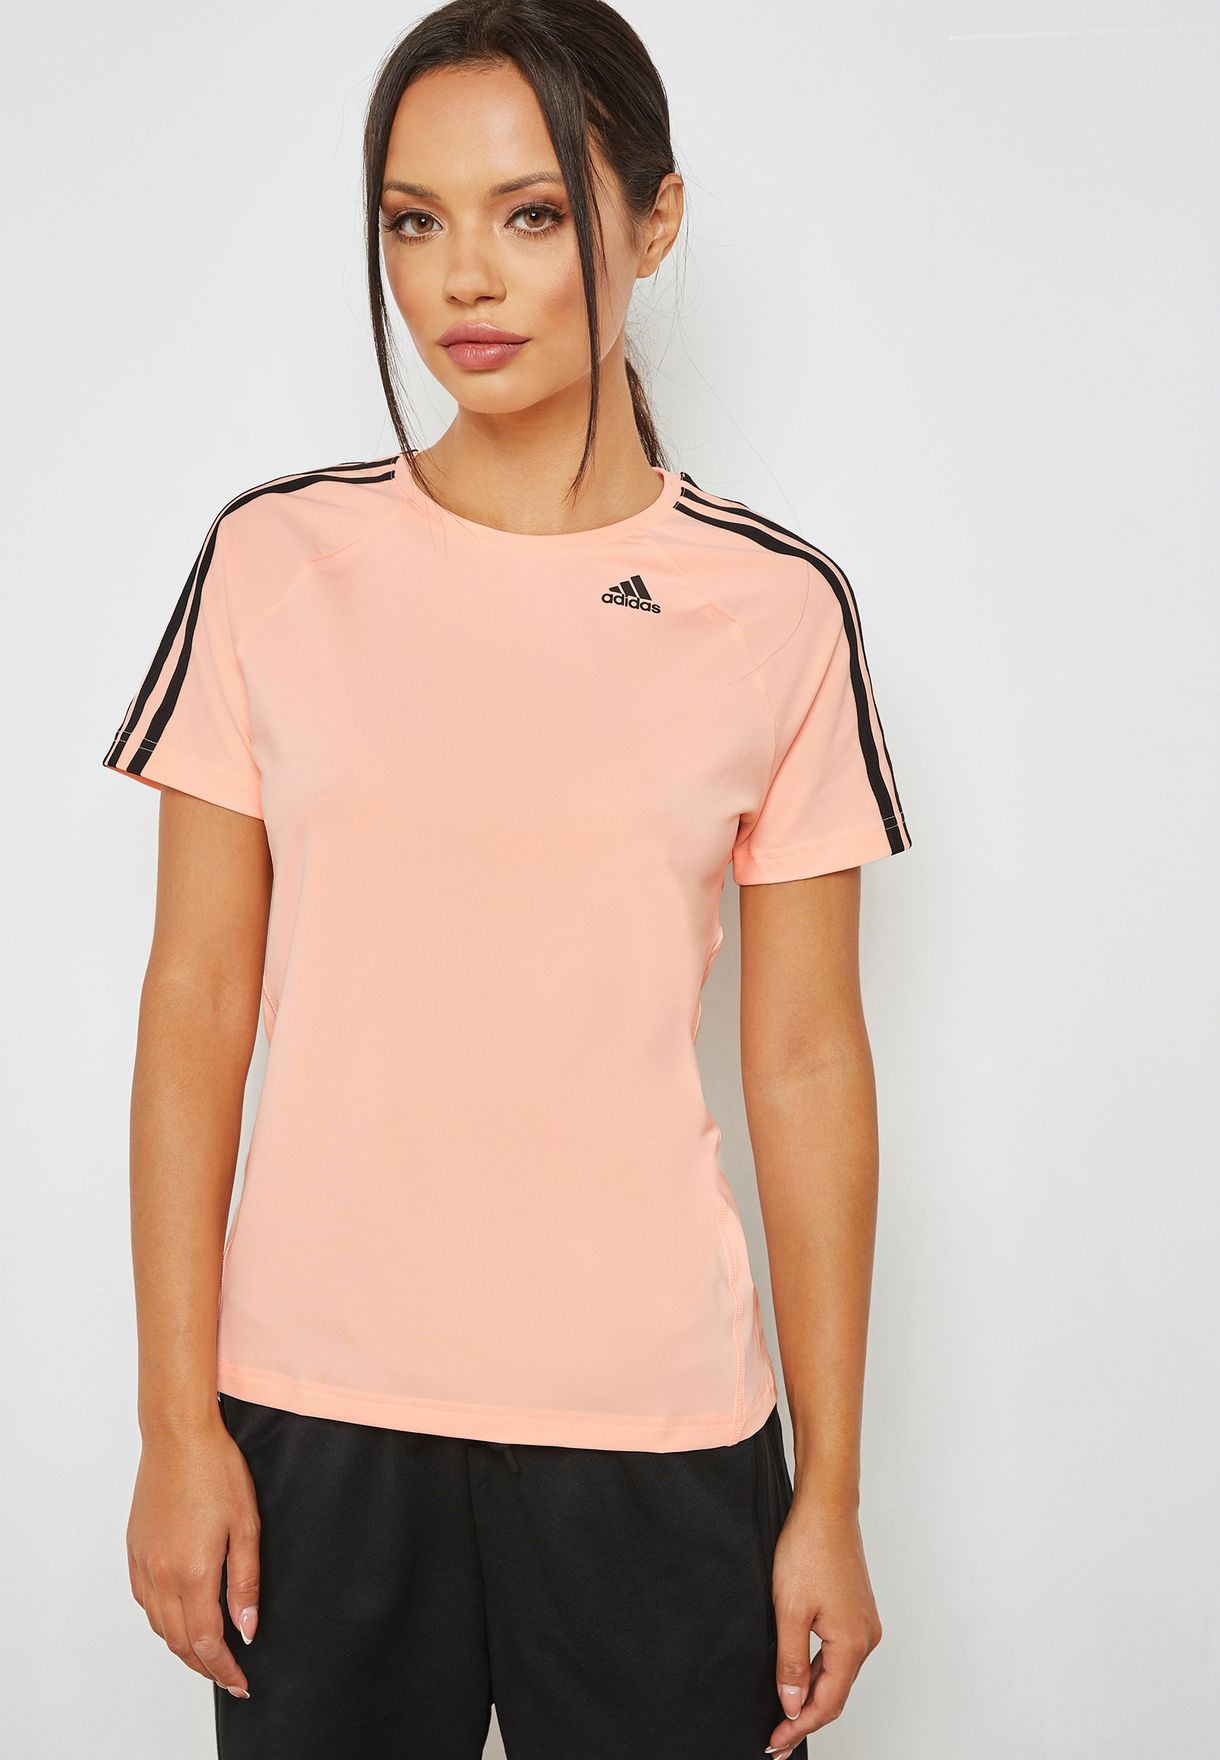 adidas pink t shirt women's